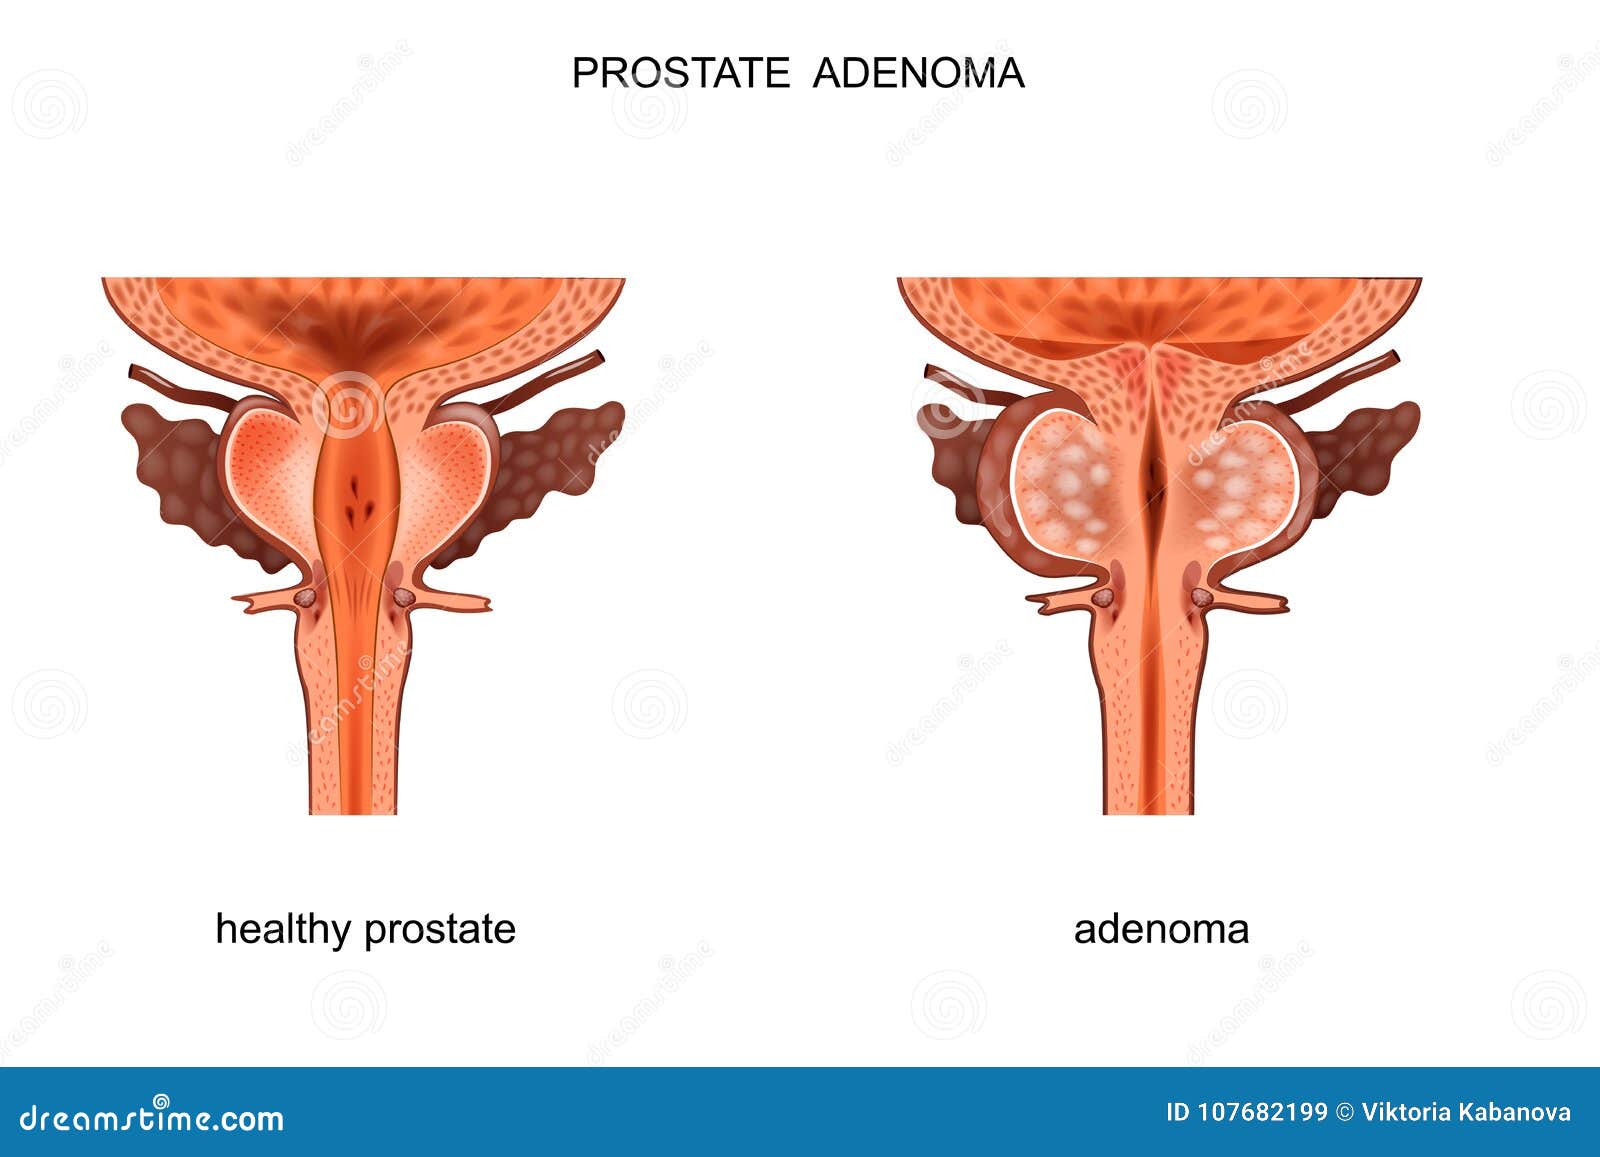 prezintă simptome de prostatită simptome la cancerul de prostată